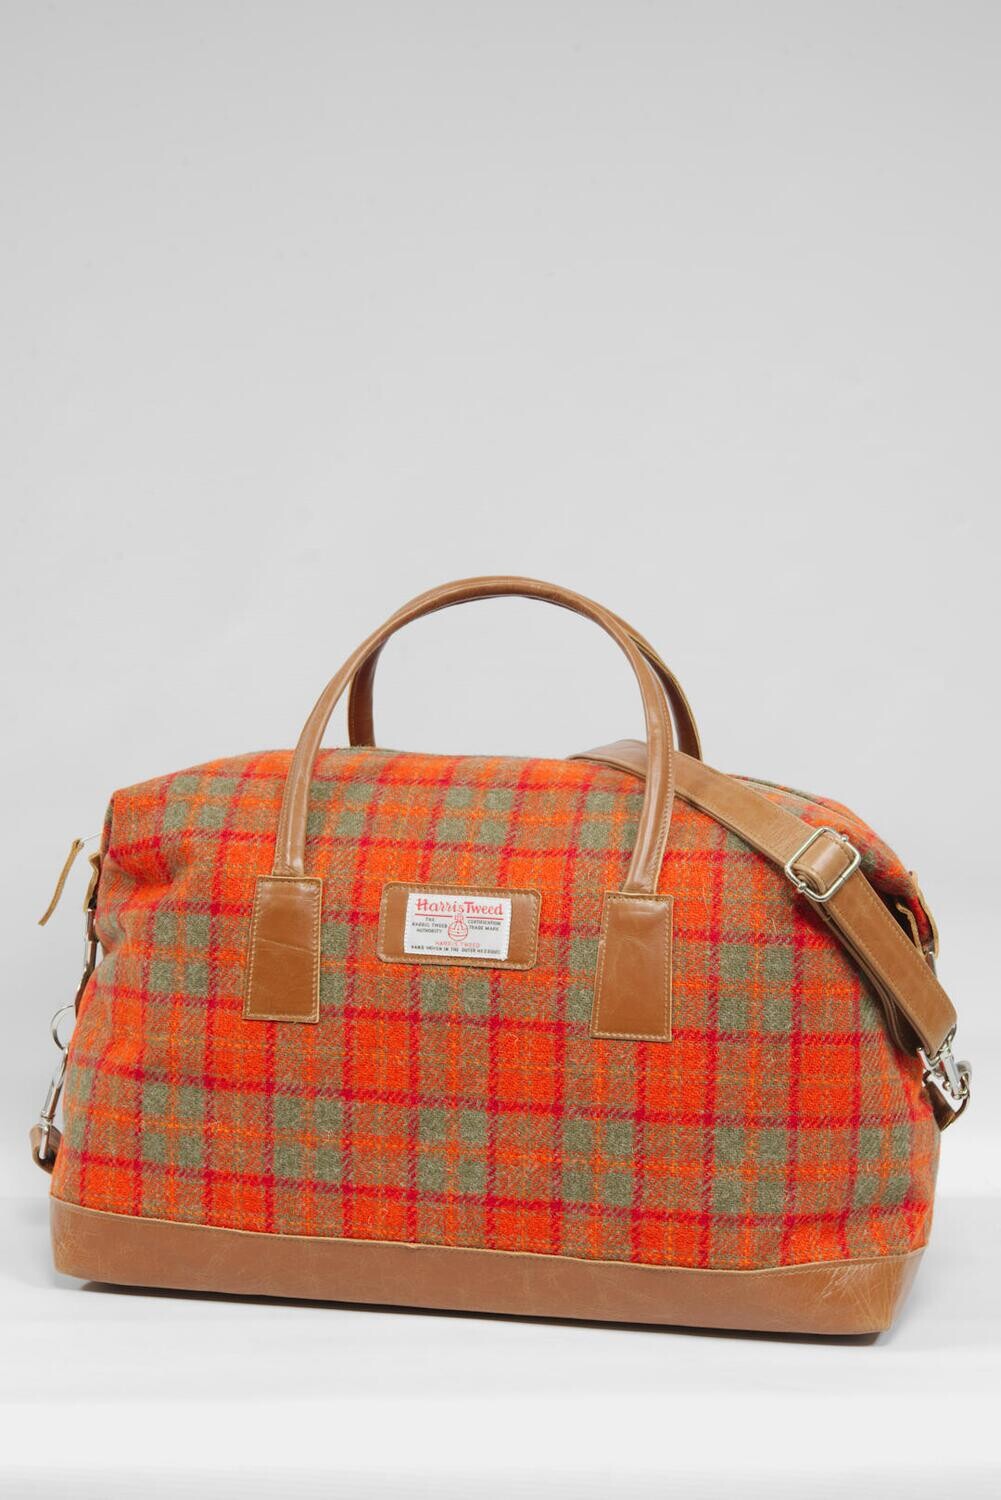 Harris Tweed Luggage Bag | A083 (Tan Leather)